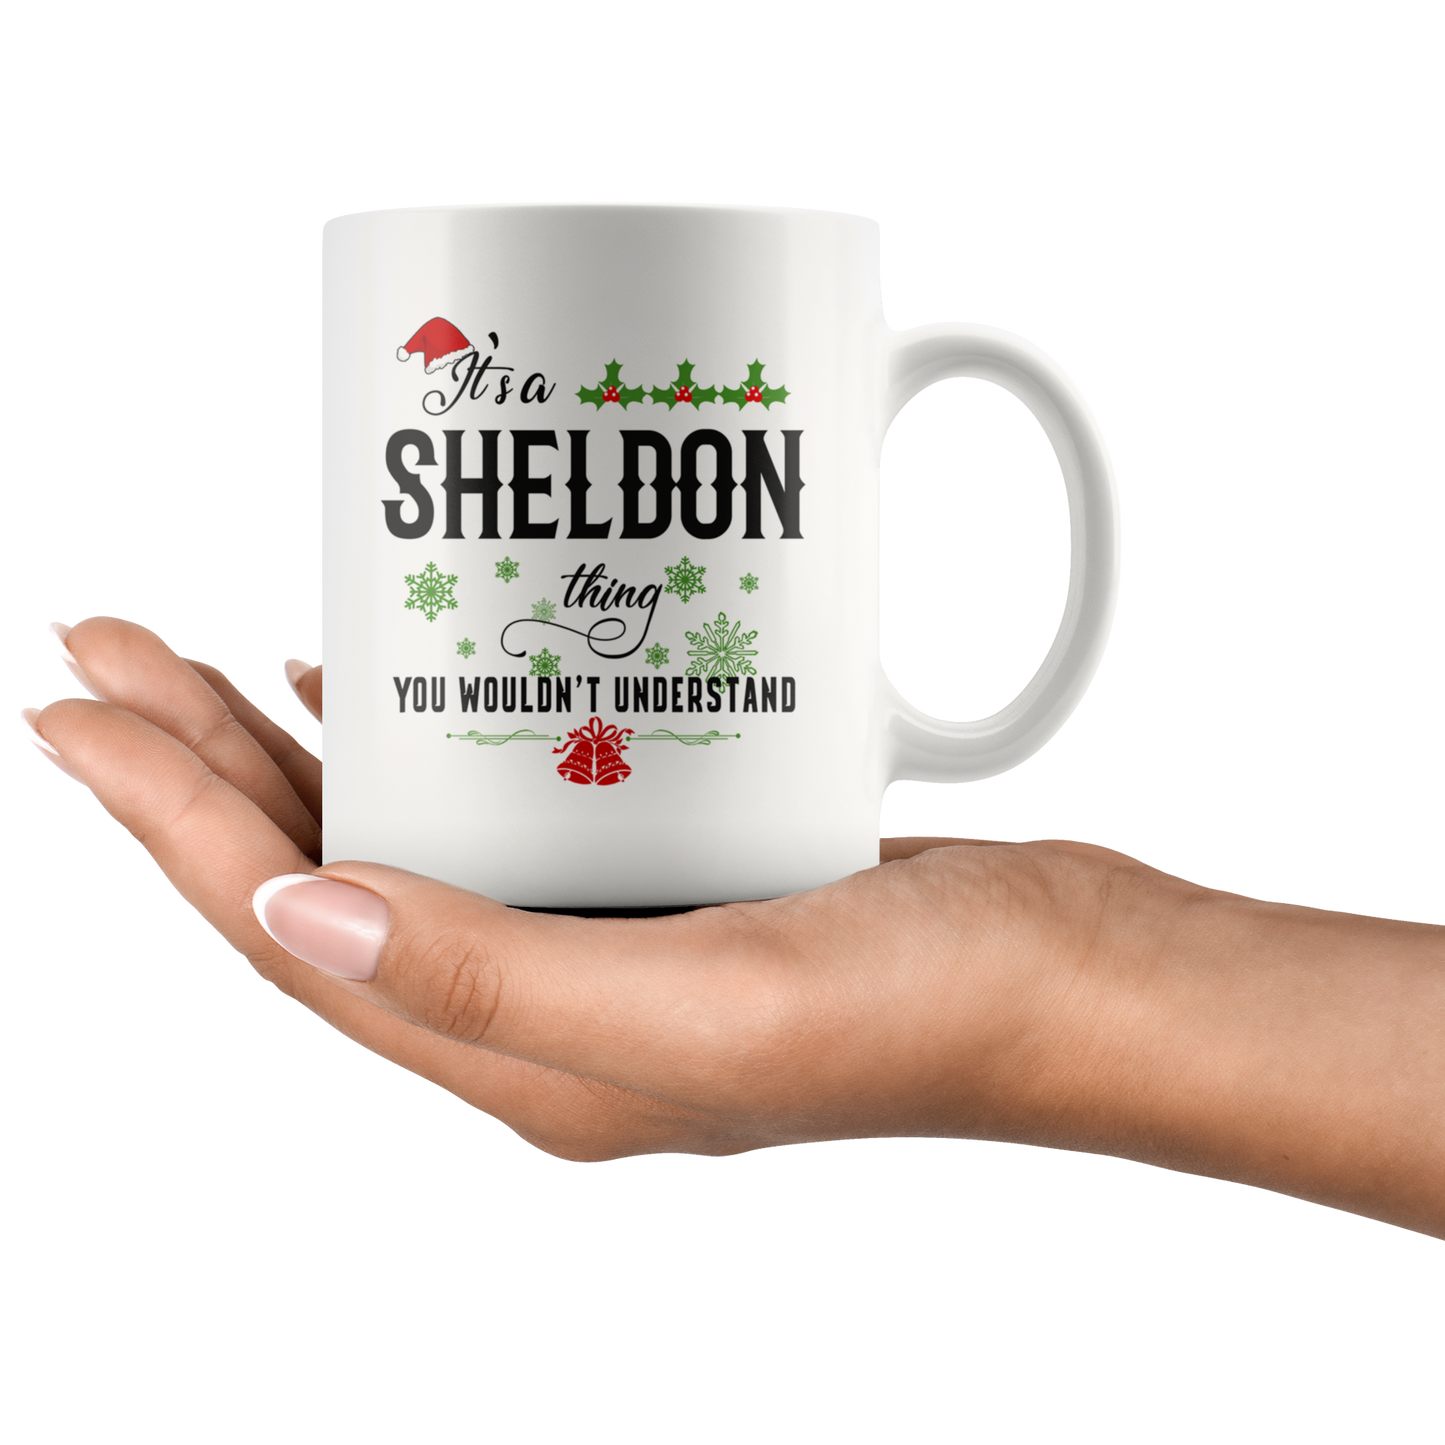 M-20323673-sp-17332 - Christmas Mug For Sheldon - It's a Sheldon Thing You Wouldn'